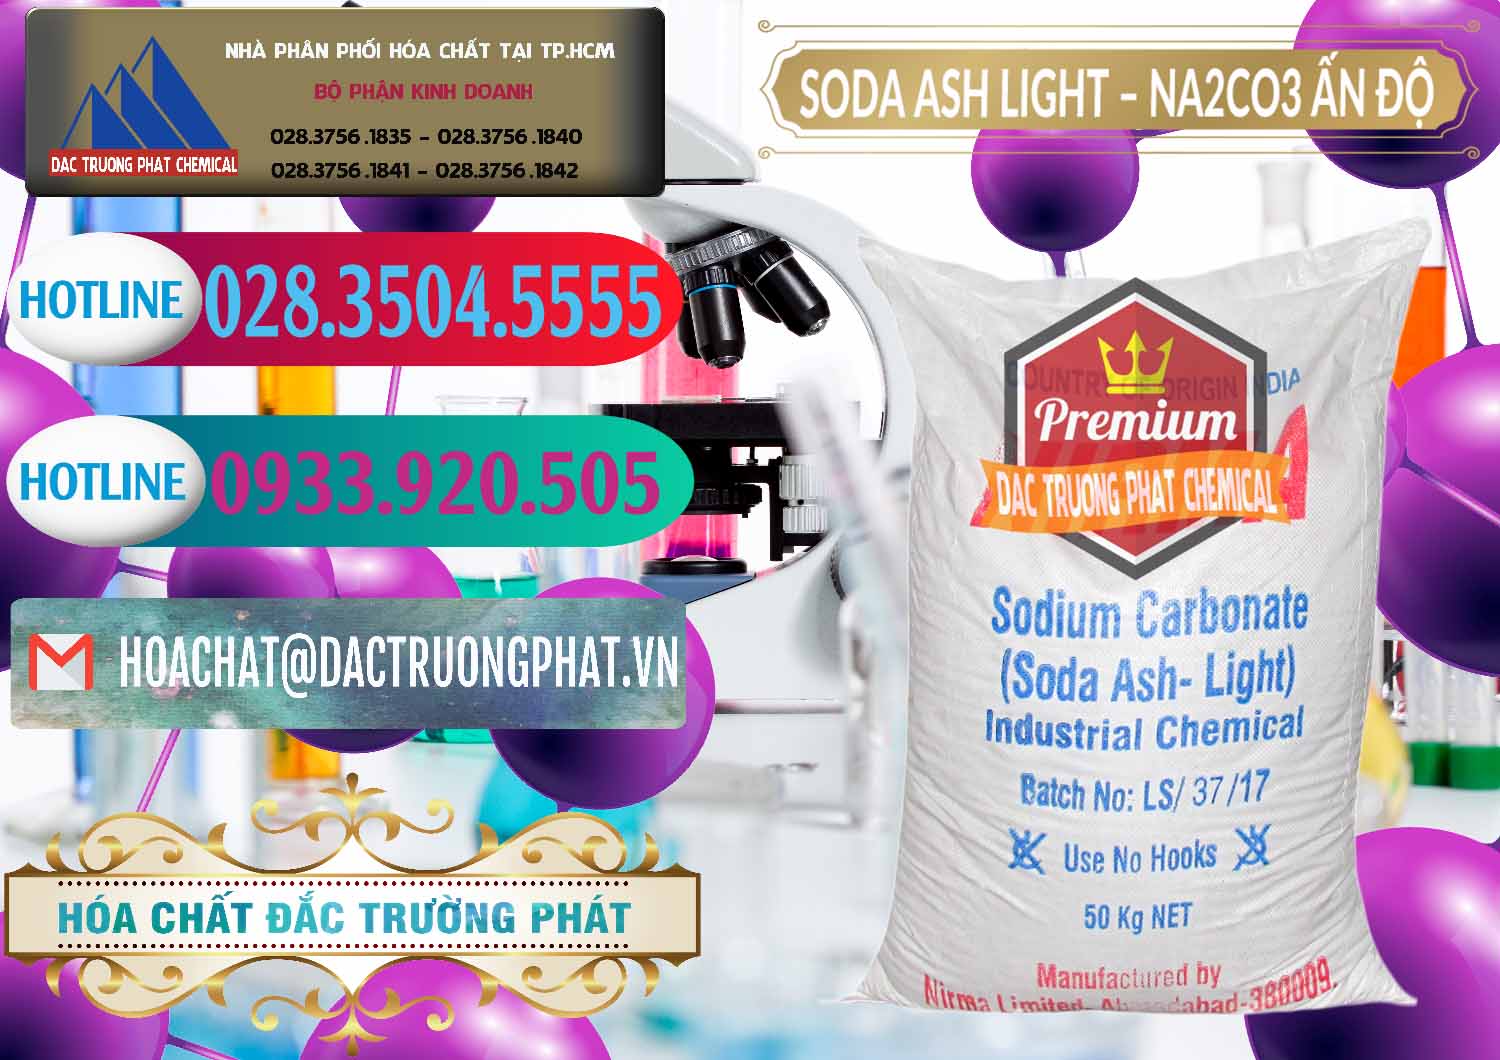 Bán Soda Ash Light - NA2CO3 Nirma Ấn Độ India - 0125 - Chuyên kinh doanh và cung cấp hóa chất tại TP.HCM - truongphat.vn